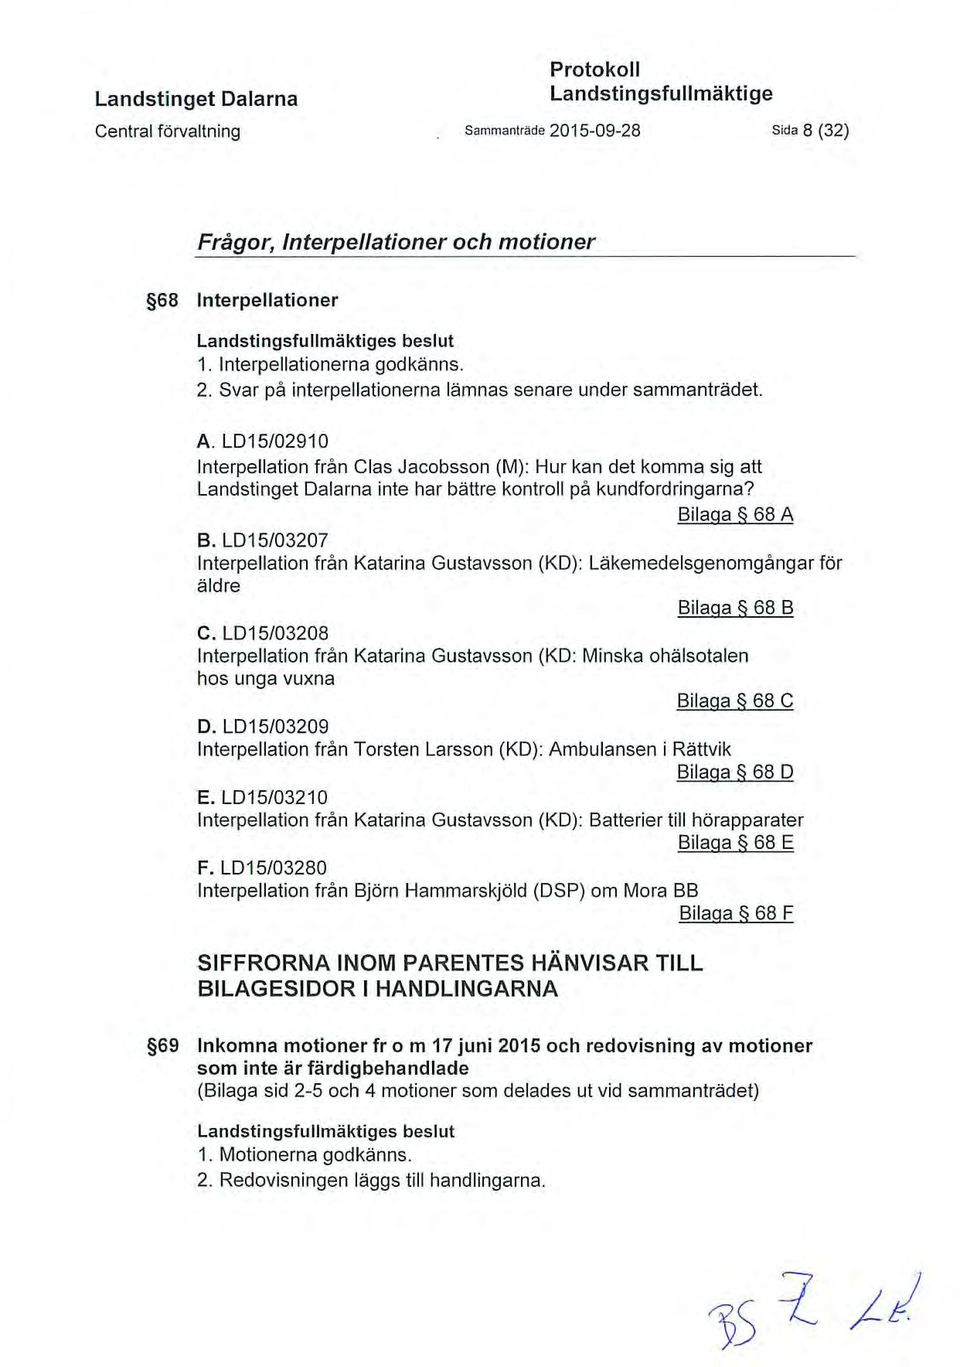 LD15/03207 Interpellation från Katarina Gustavsson (KO): Läkemedelsgenomgångar för äldre Bilaga 68 B C.